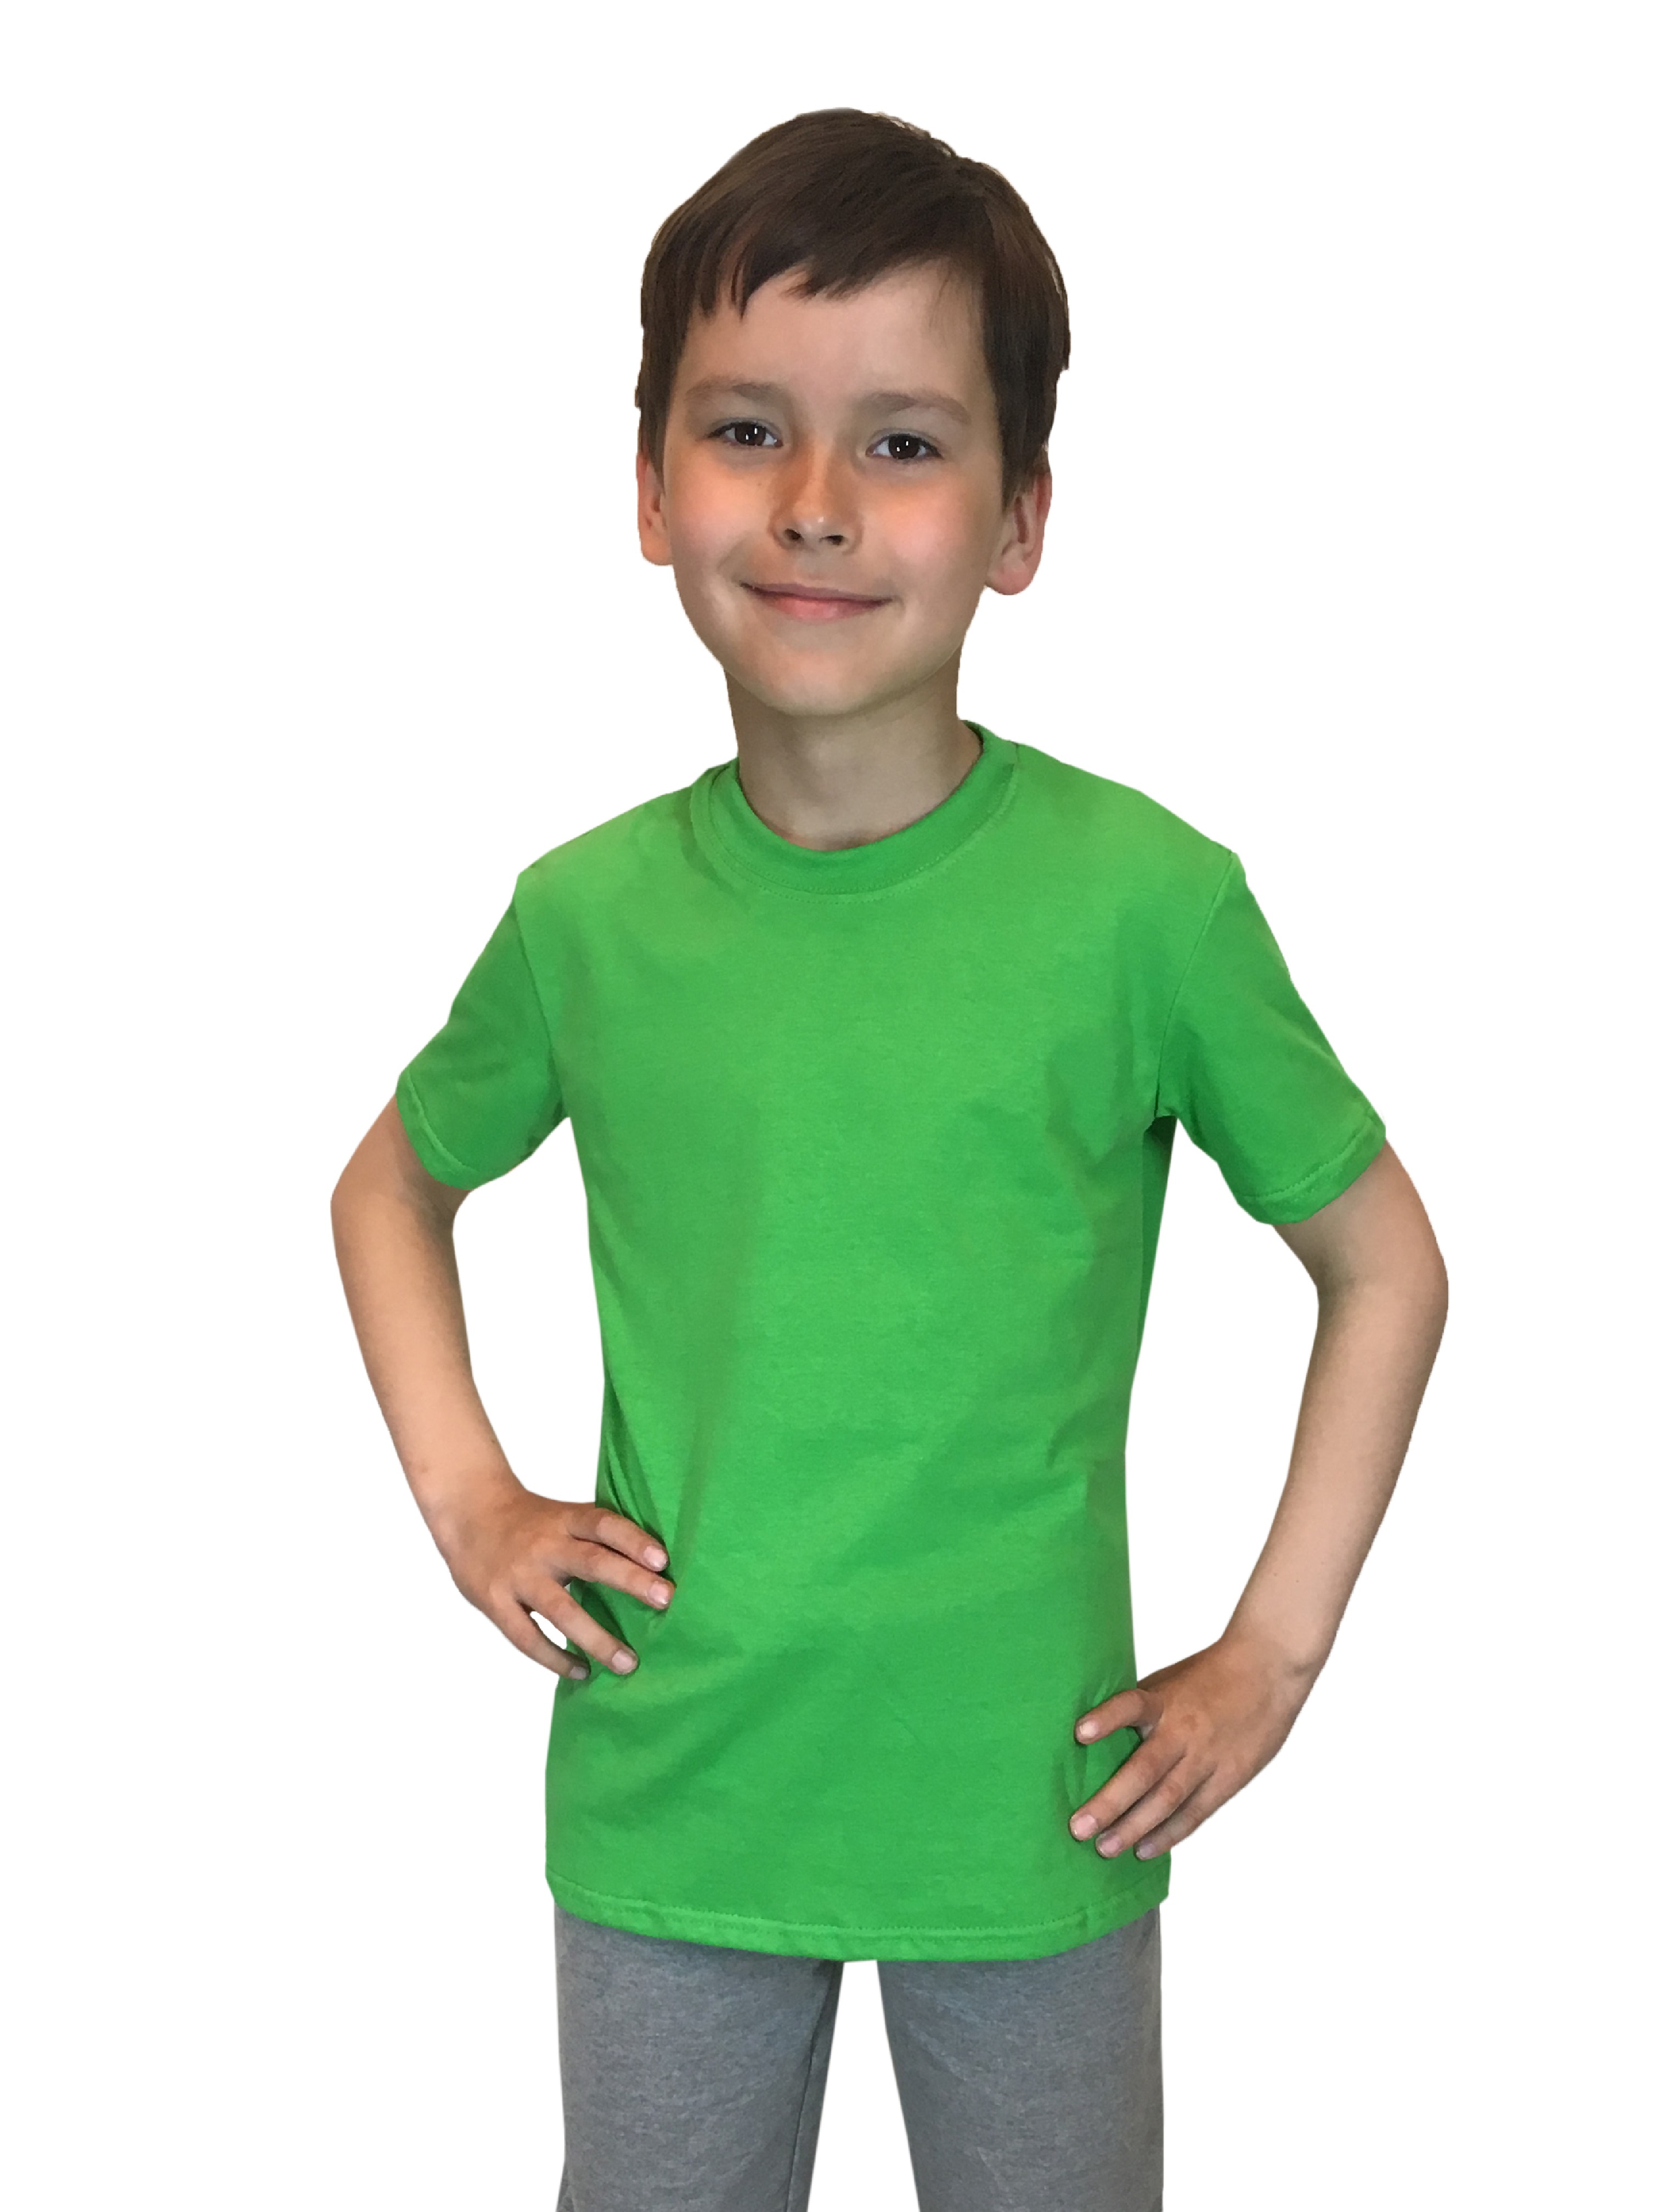 Футболка детская Детрик, зеленый размер 98, Ф-1-72